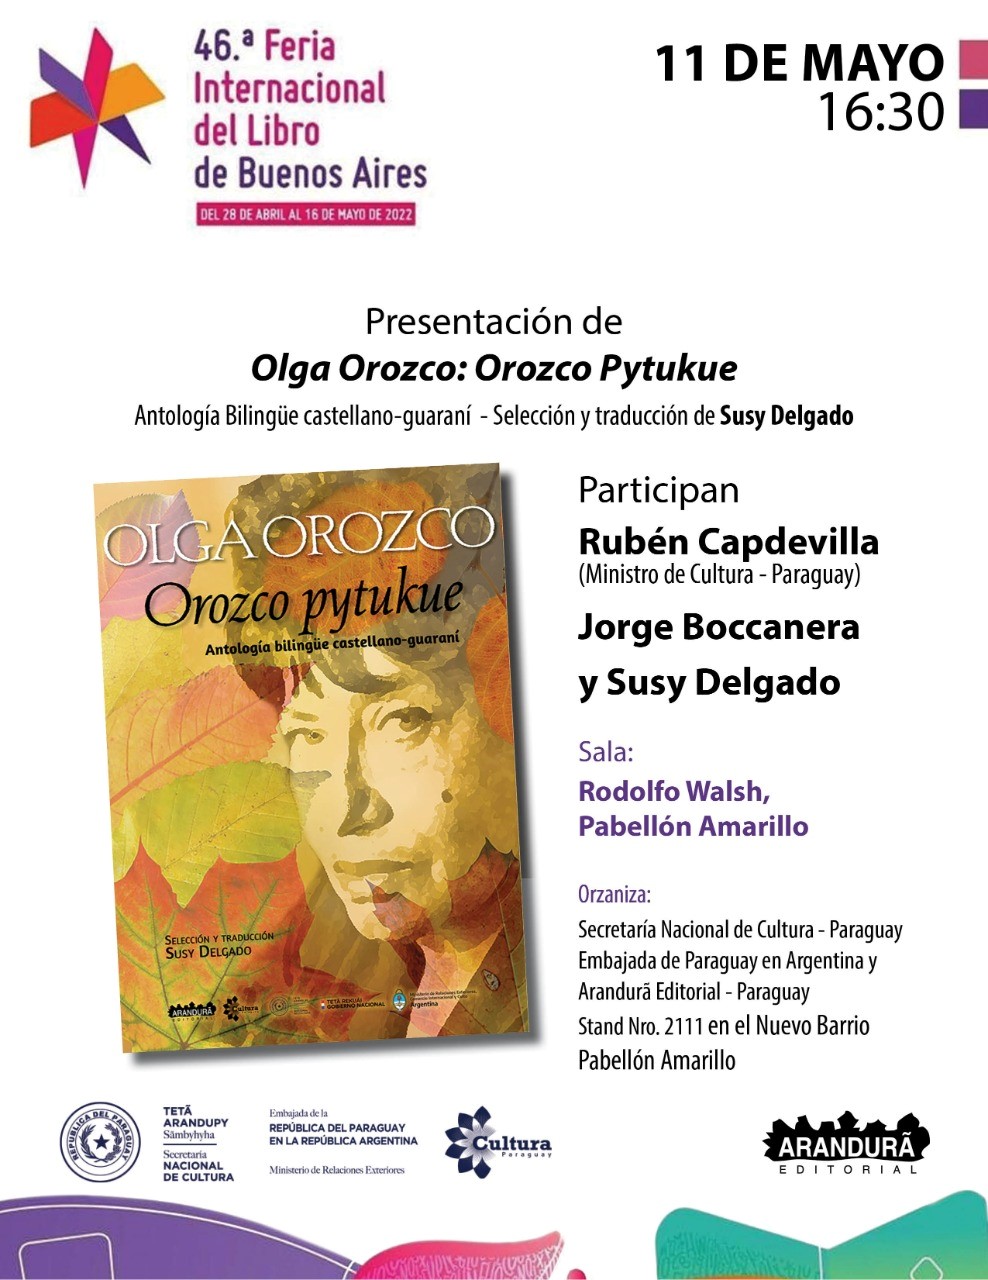 Presentación de Orozco Pytukue en la Feria del Libro de Buenos Aires imagen